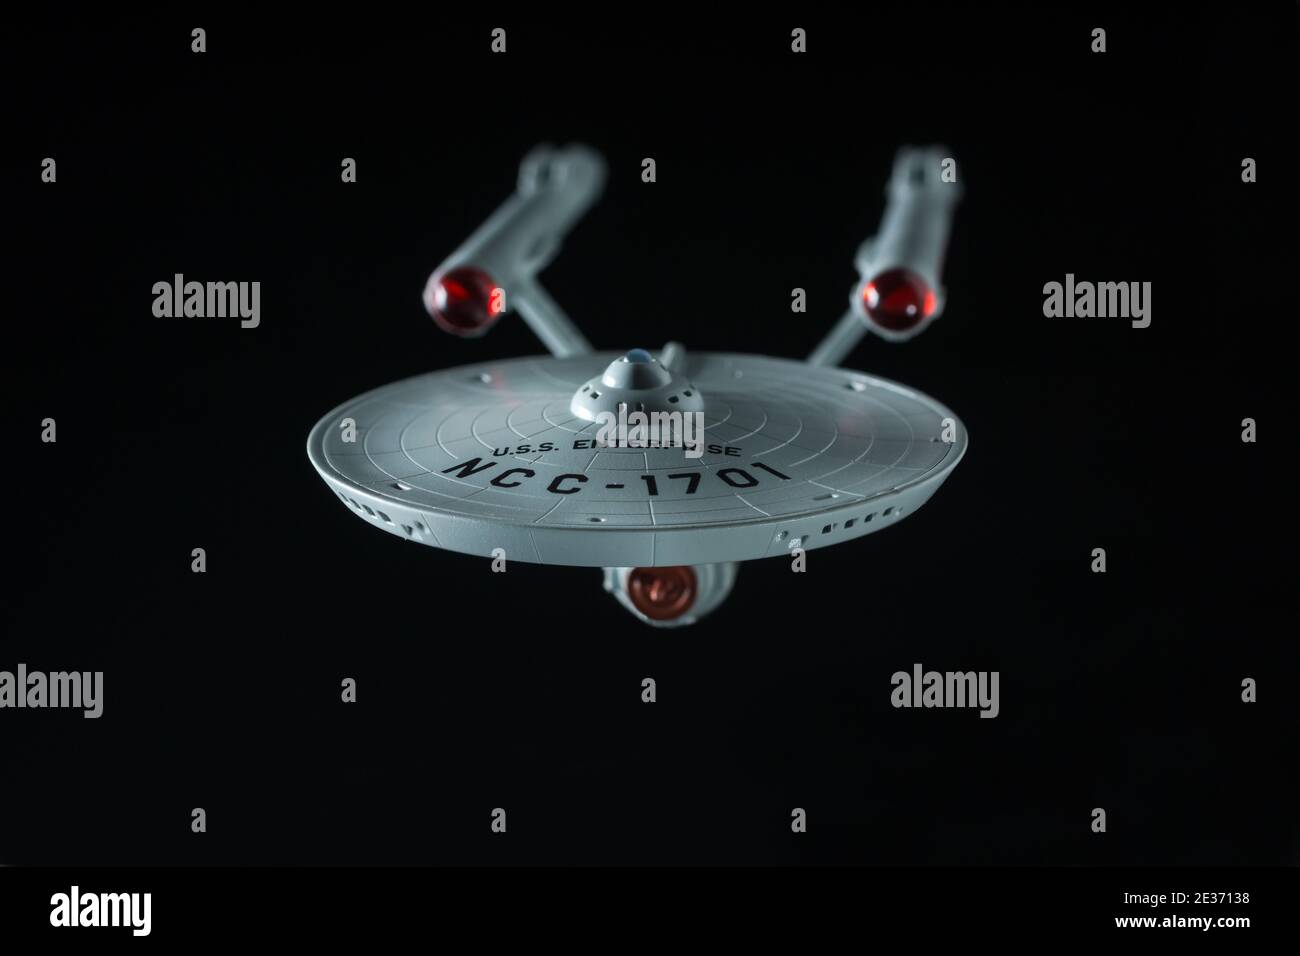 Modèle USS Enterprise basé sur le vaisseau spatial du Série TV Star Trek créé par Gene Roddenberry sur un arrière-plan noir Banque D'Images